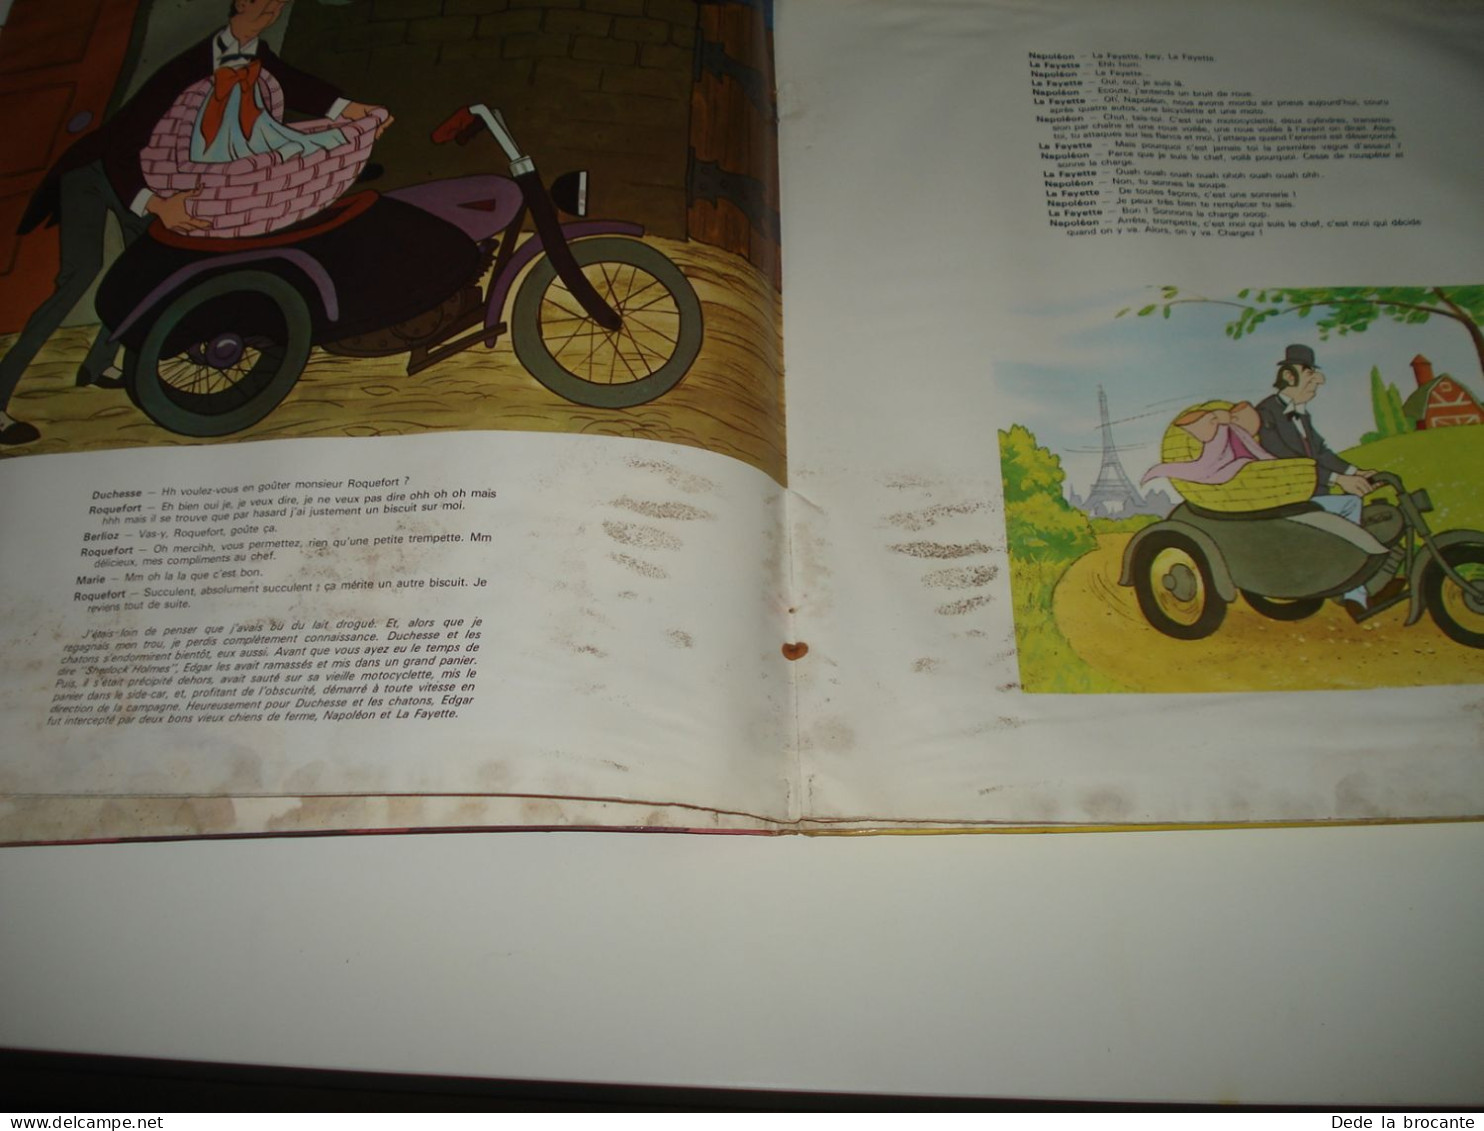 B4 / Aristochats - Roger Carel - LP - Disneyland - ST 3995 F - Fr  1971 - M/G - Kinderlieder